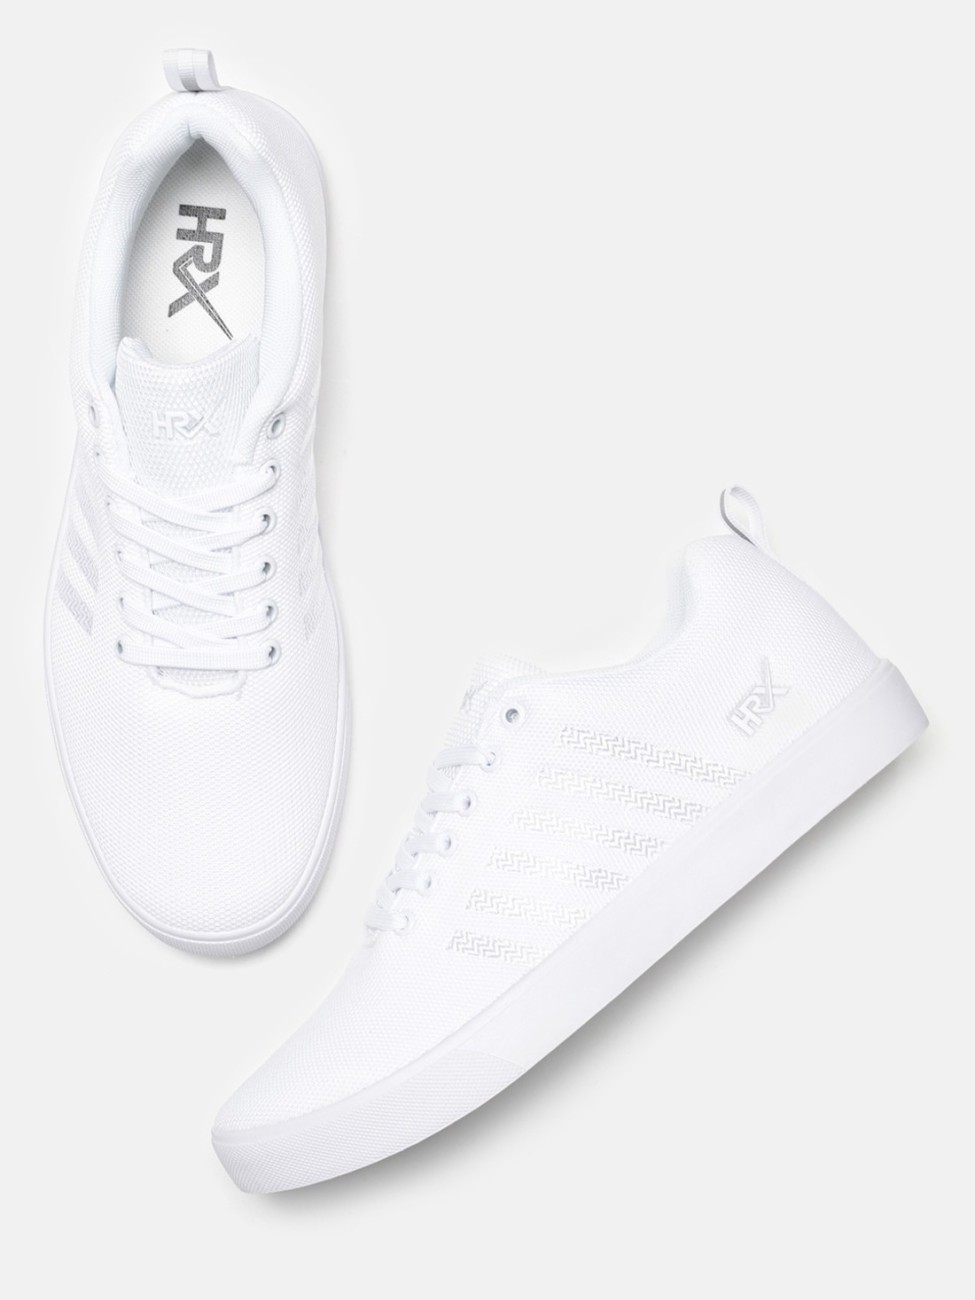 hrx white sneakers